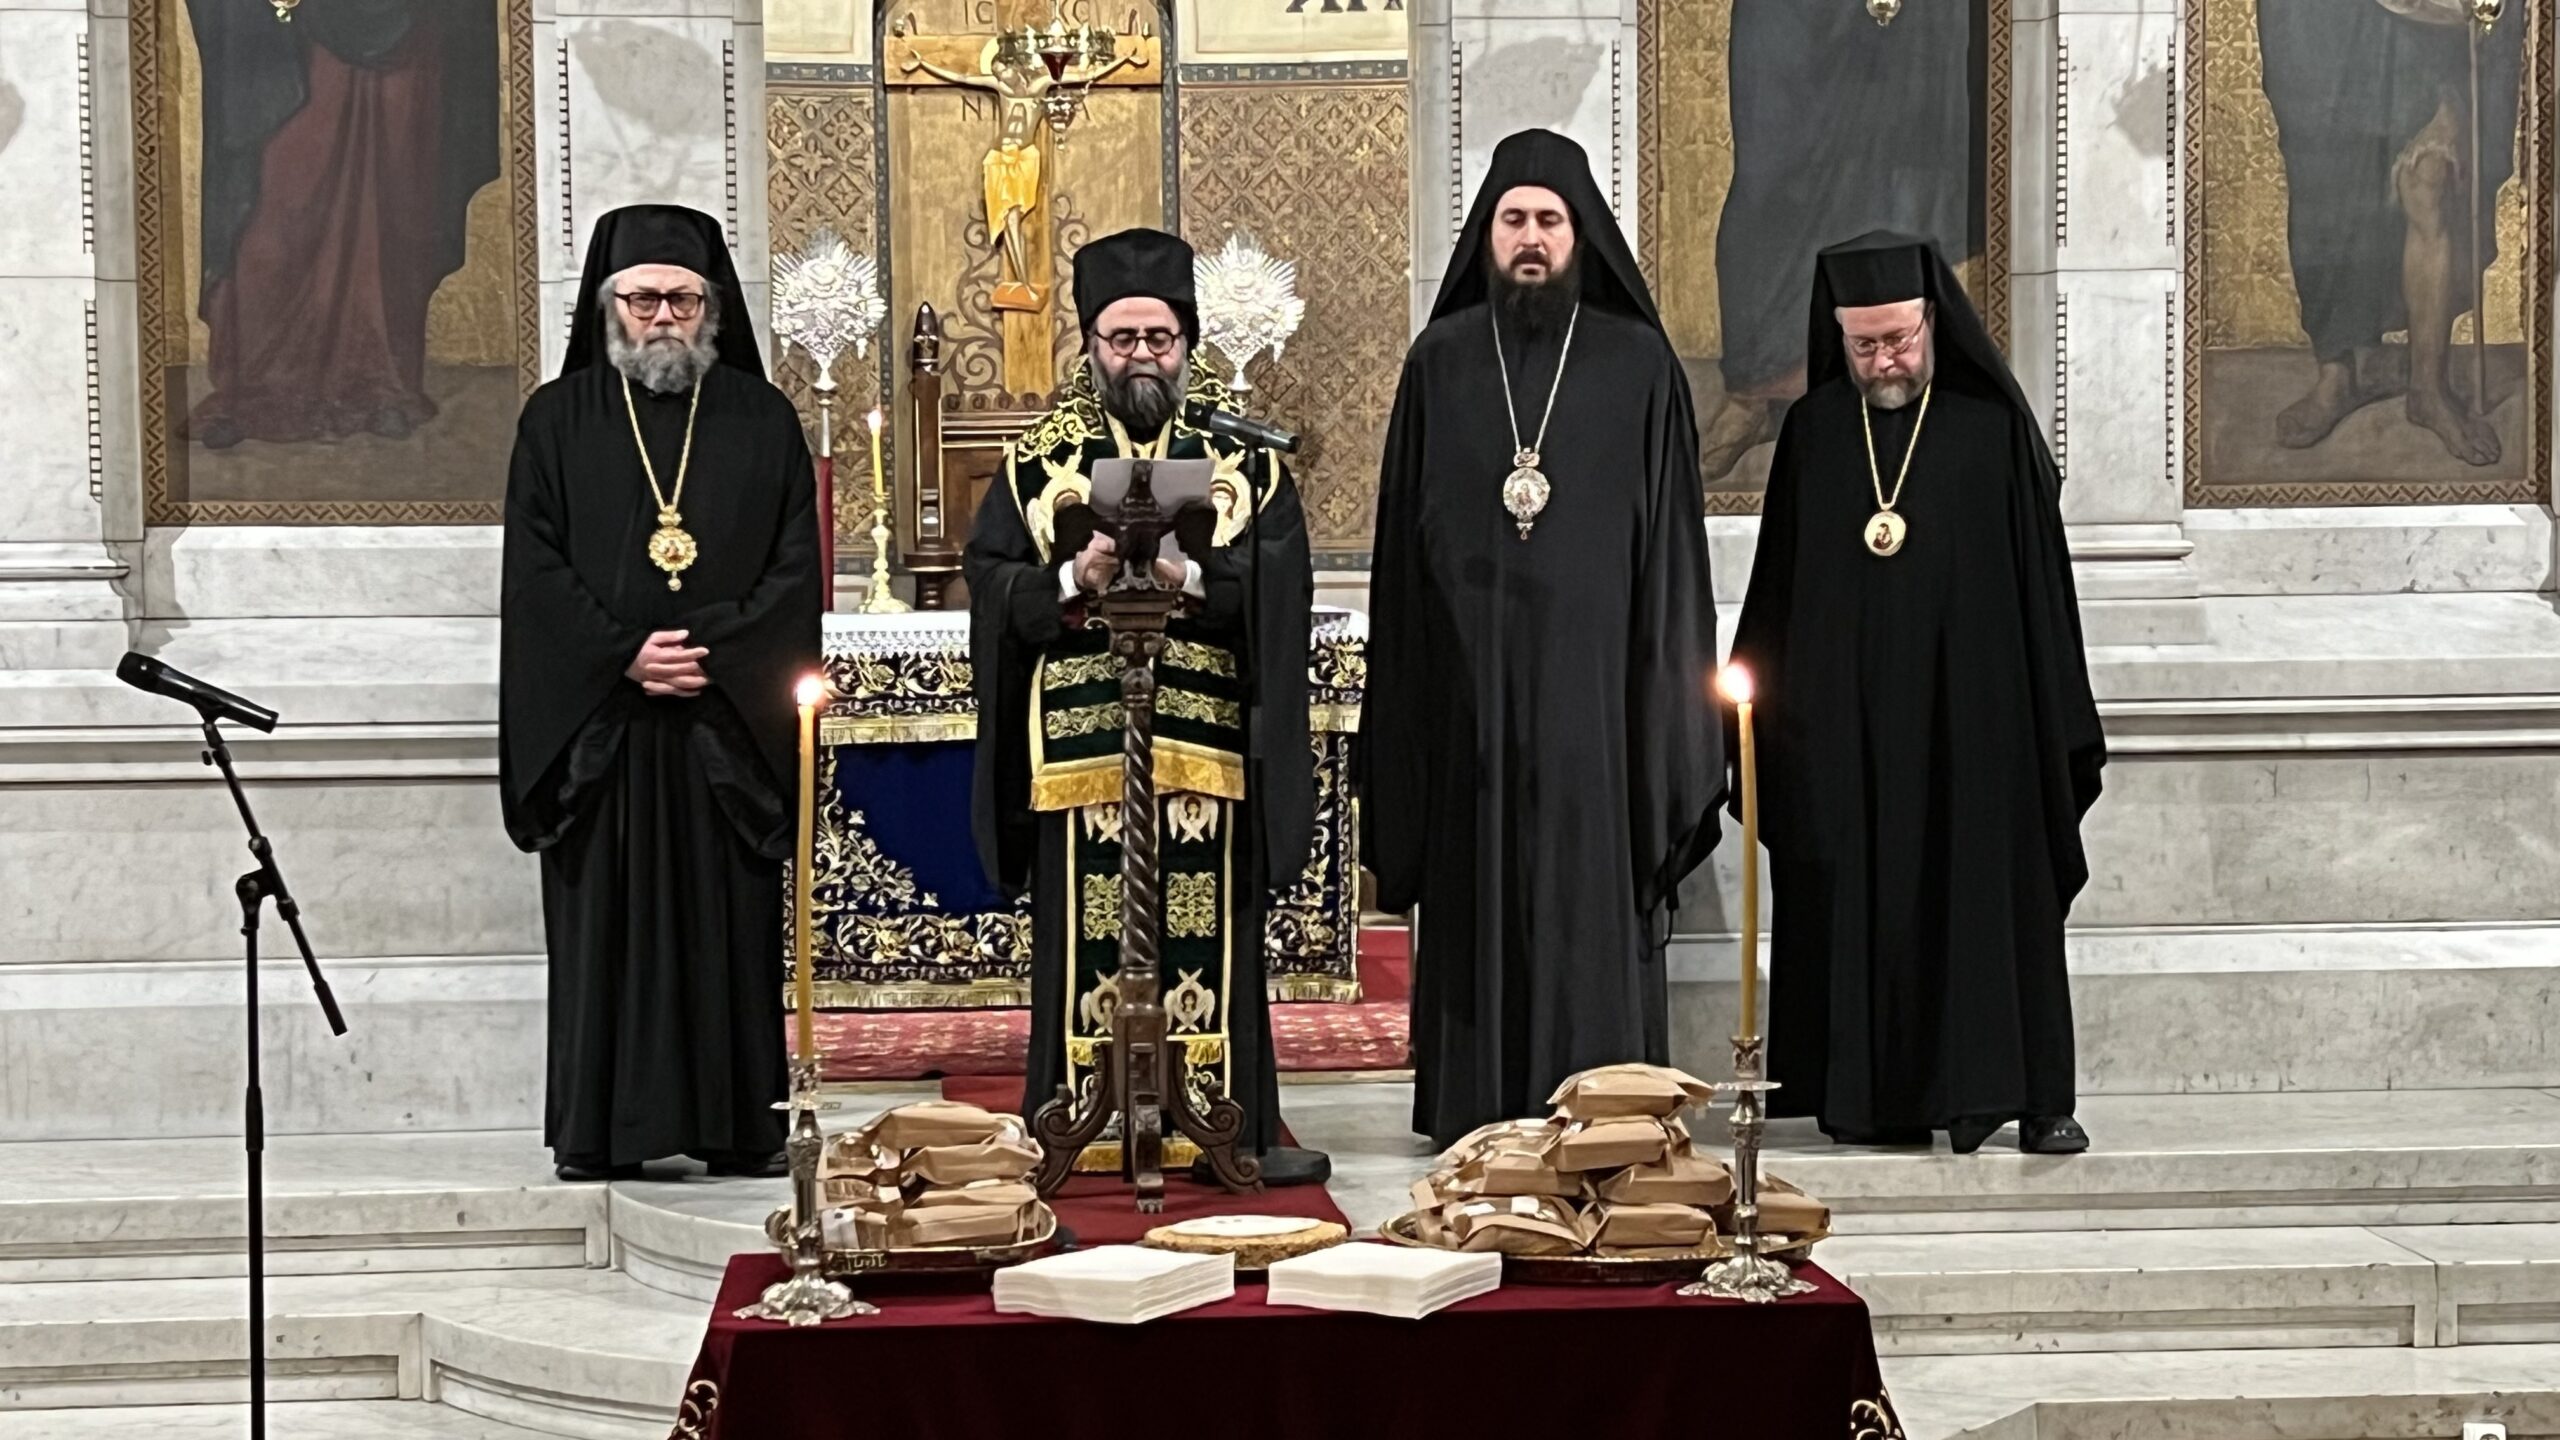 Vidéo de la cérémonie des vœux de l’Assemblée des évêques orthodoxes de France (AEOF) aux autorités civiles et religieuses le 17 janvier